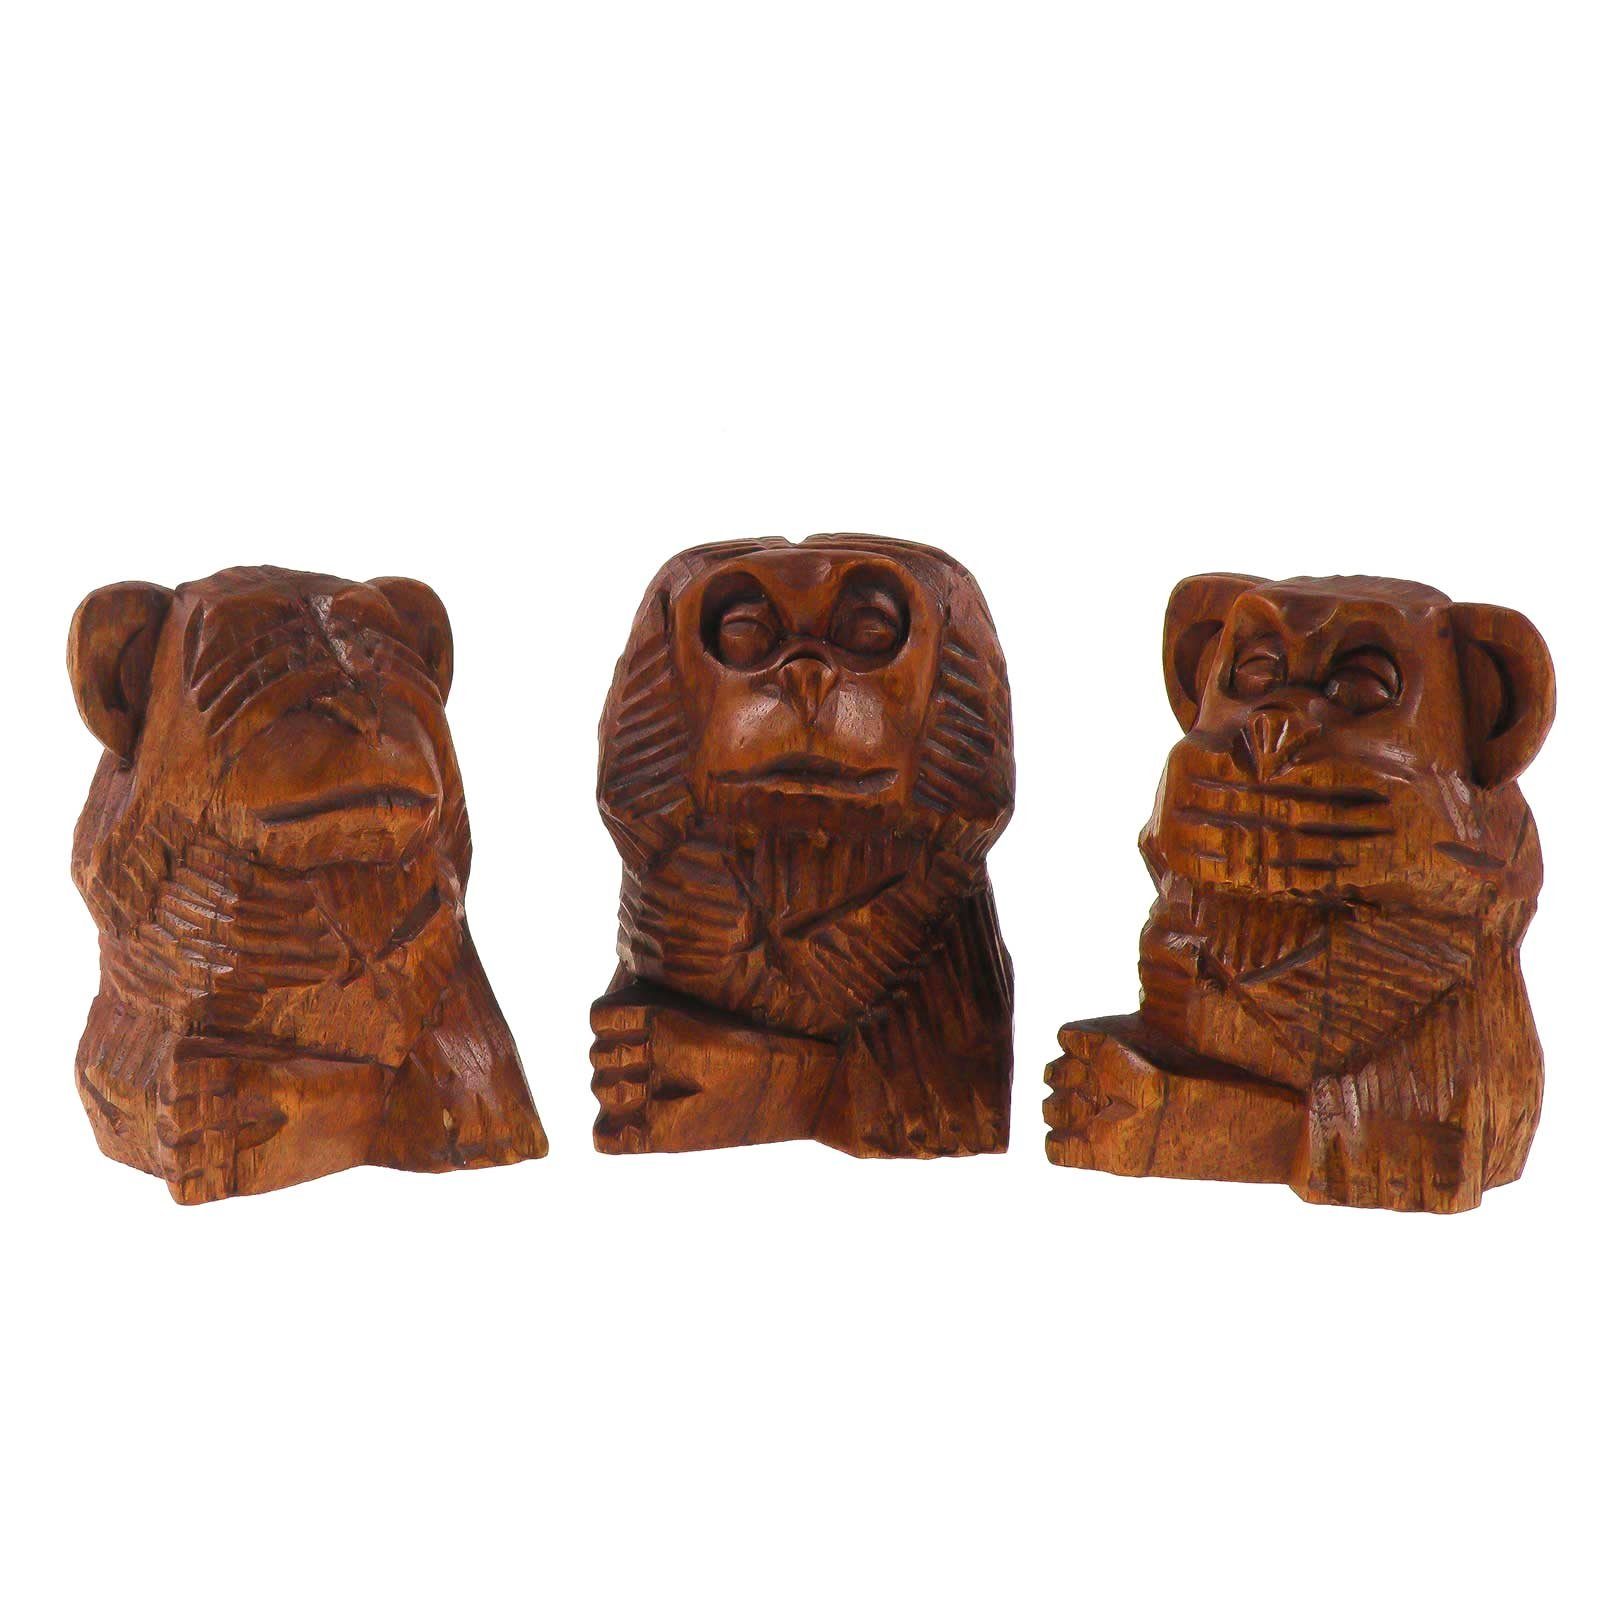 maDDma Tierfigur 3 Weise Affen, nichts hören, sehen, sagen, Soar-Holz, ca. 10 cm, rotbraun